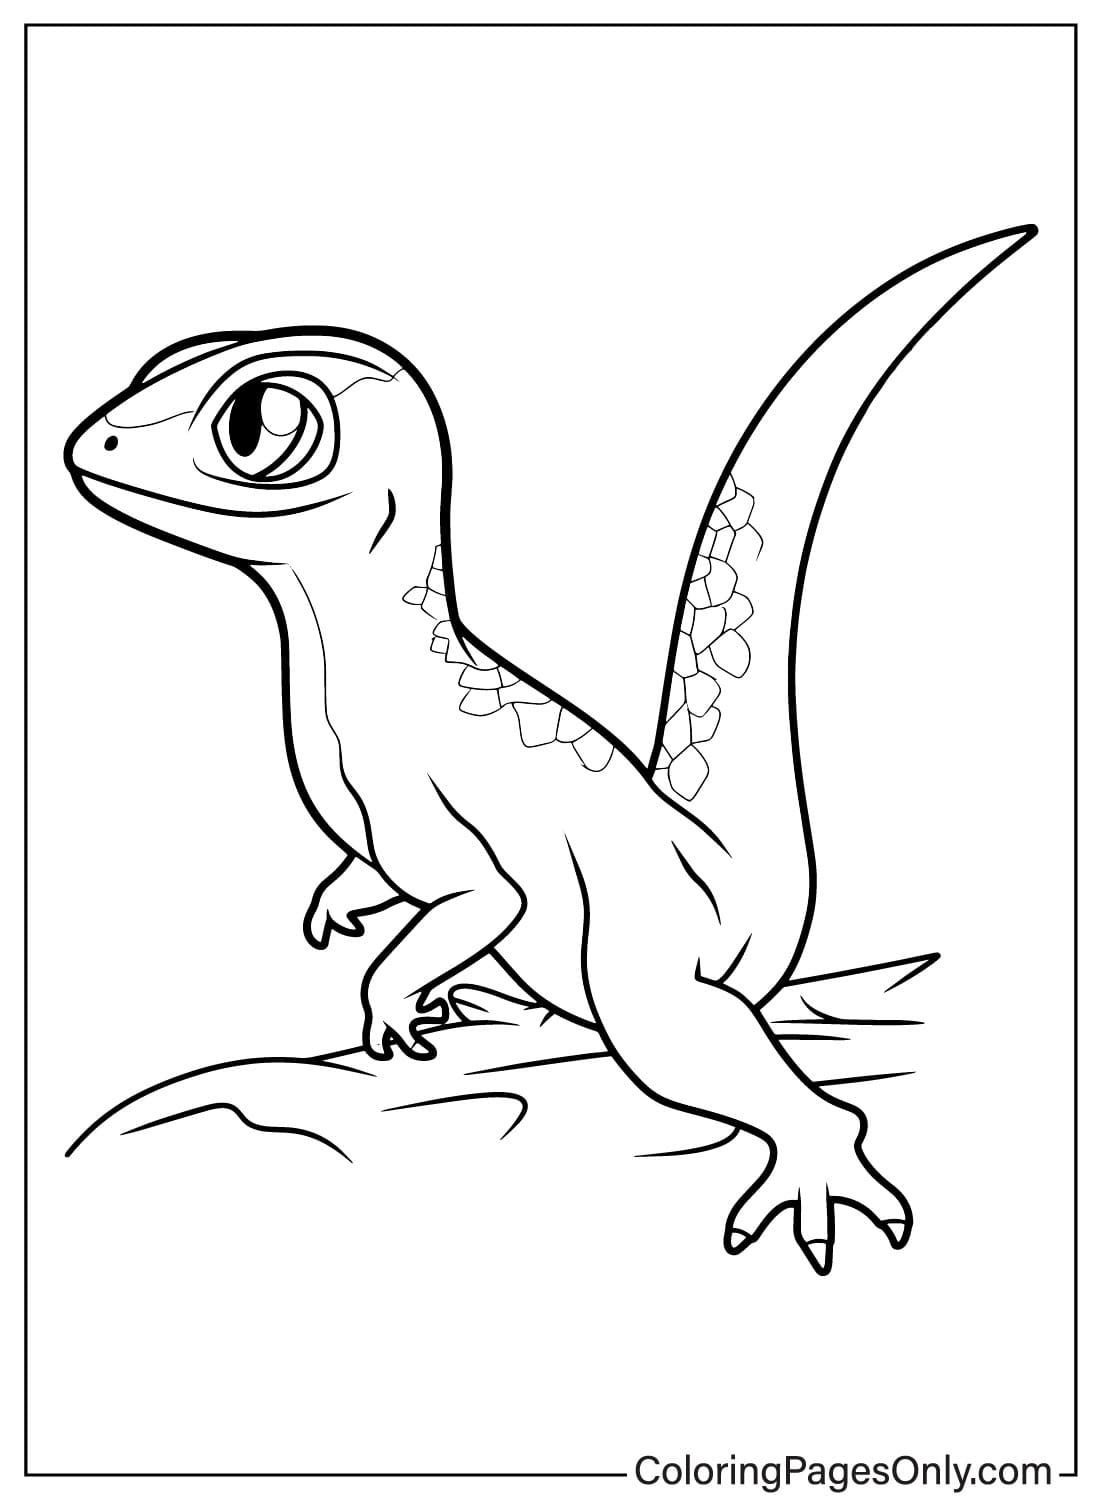 Página para colorir de lagarto para impressão de lagarto